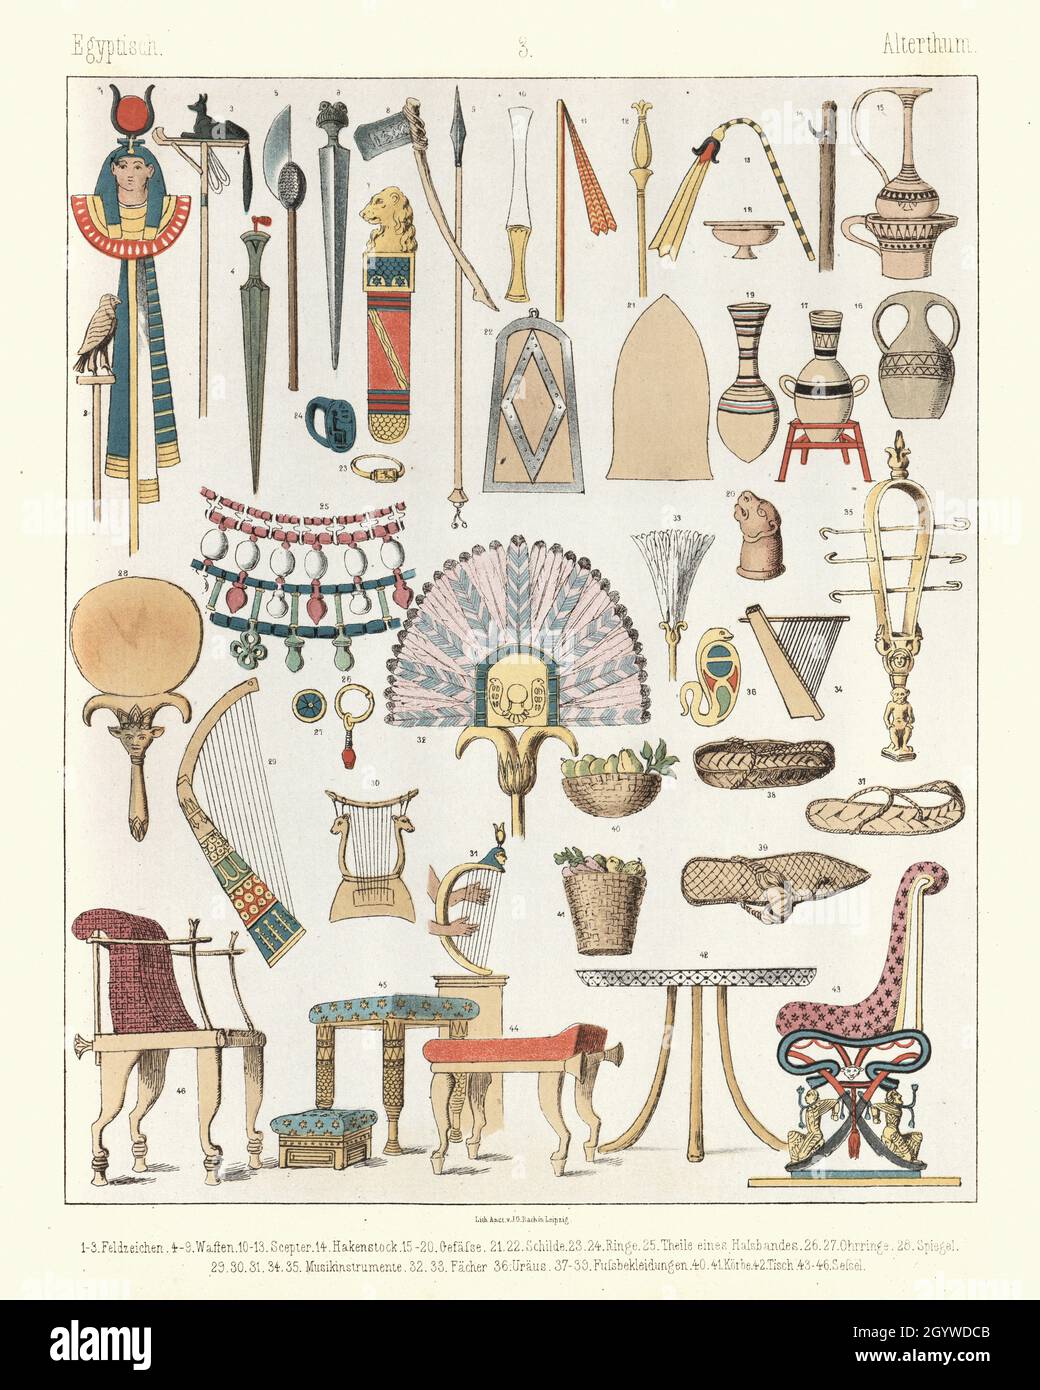 Esempi di antichi manufatti egiziani, sedie, mobili, armi, spade, assi, vasi, ceramiche Foto Stock